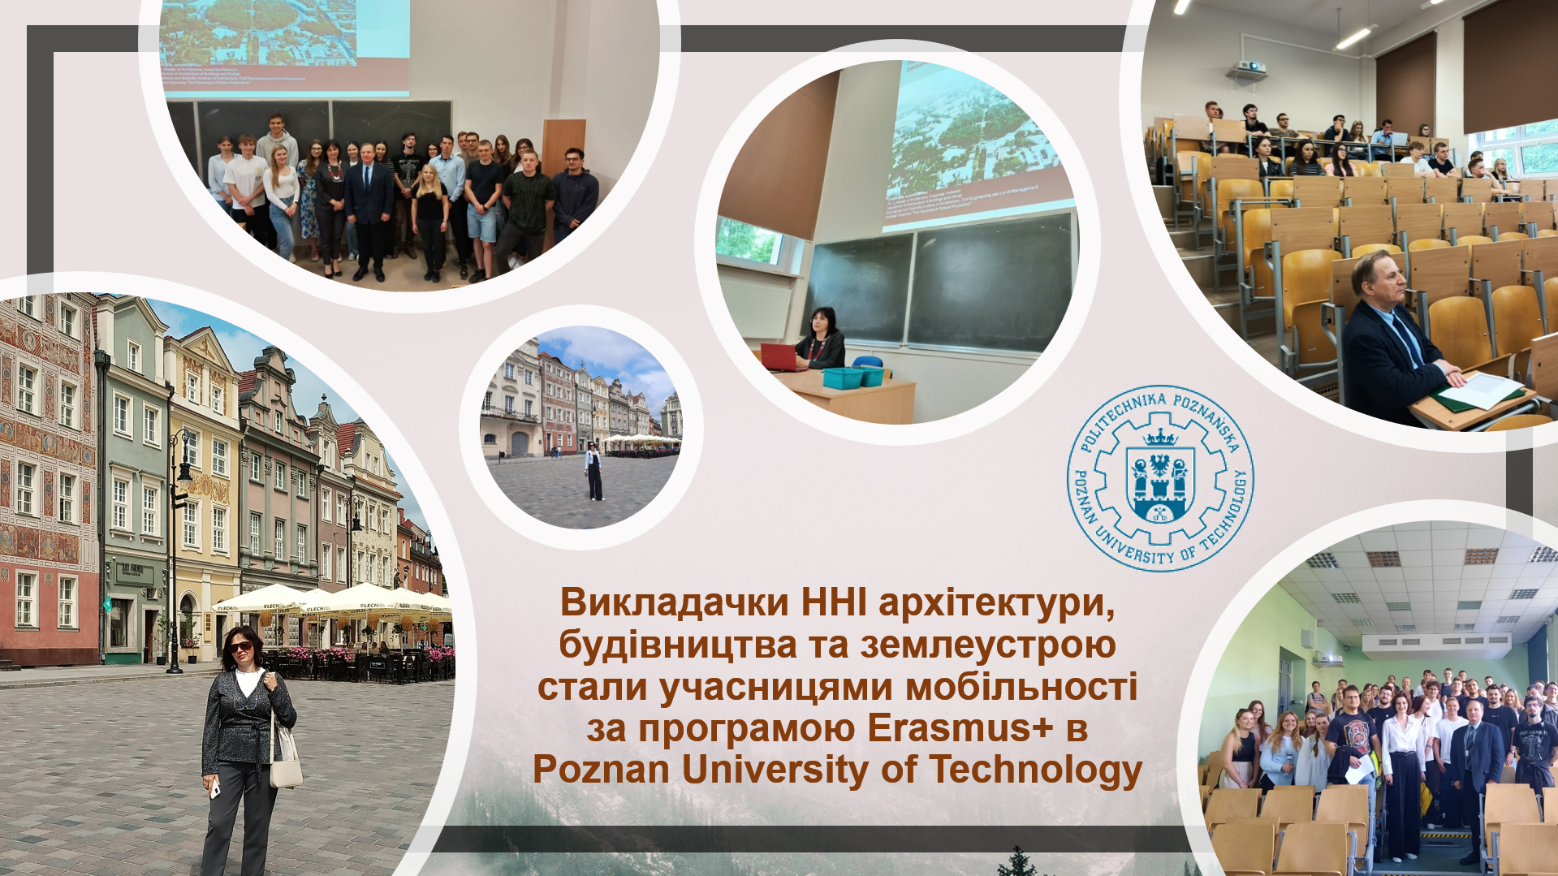 Науковиці ННІ архбудзему стали учасницями мобільності за програмою Erasmus+ у Познанській Політехніці 